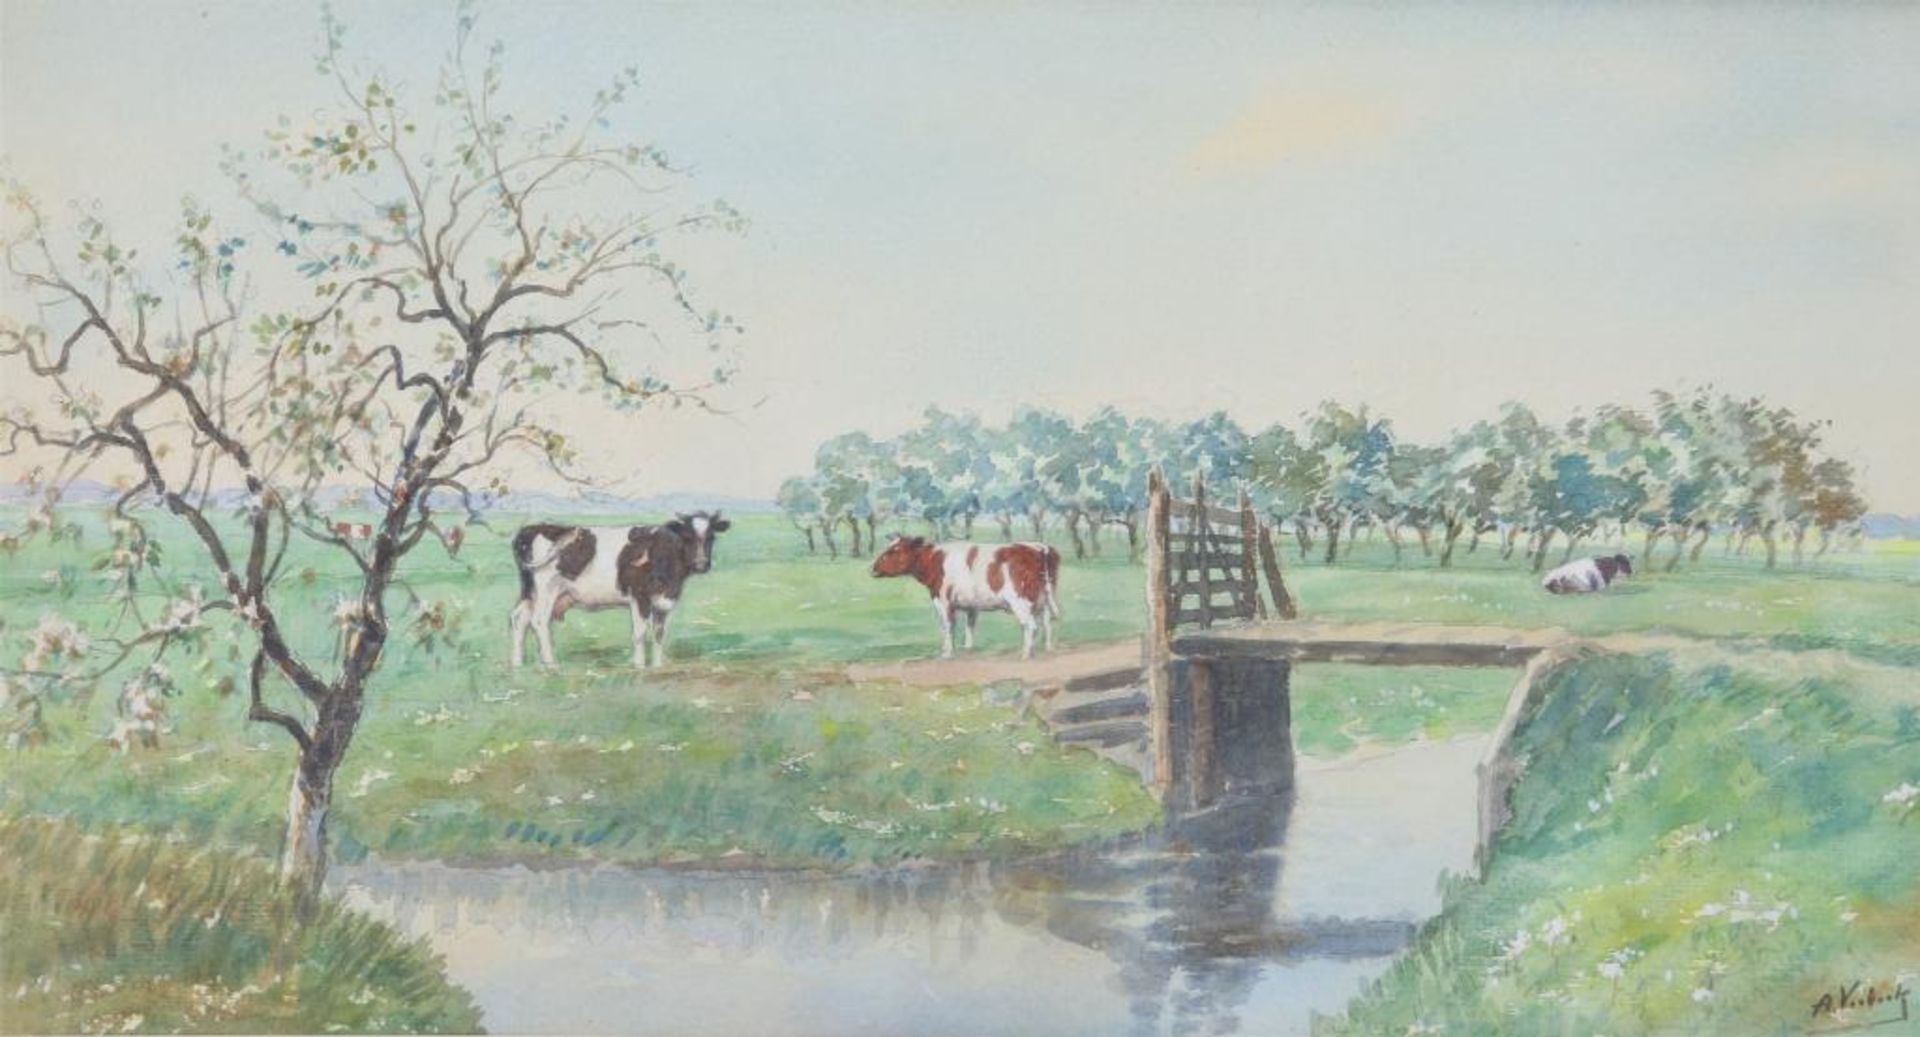 Verbeek, A. Koeien in landschap